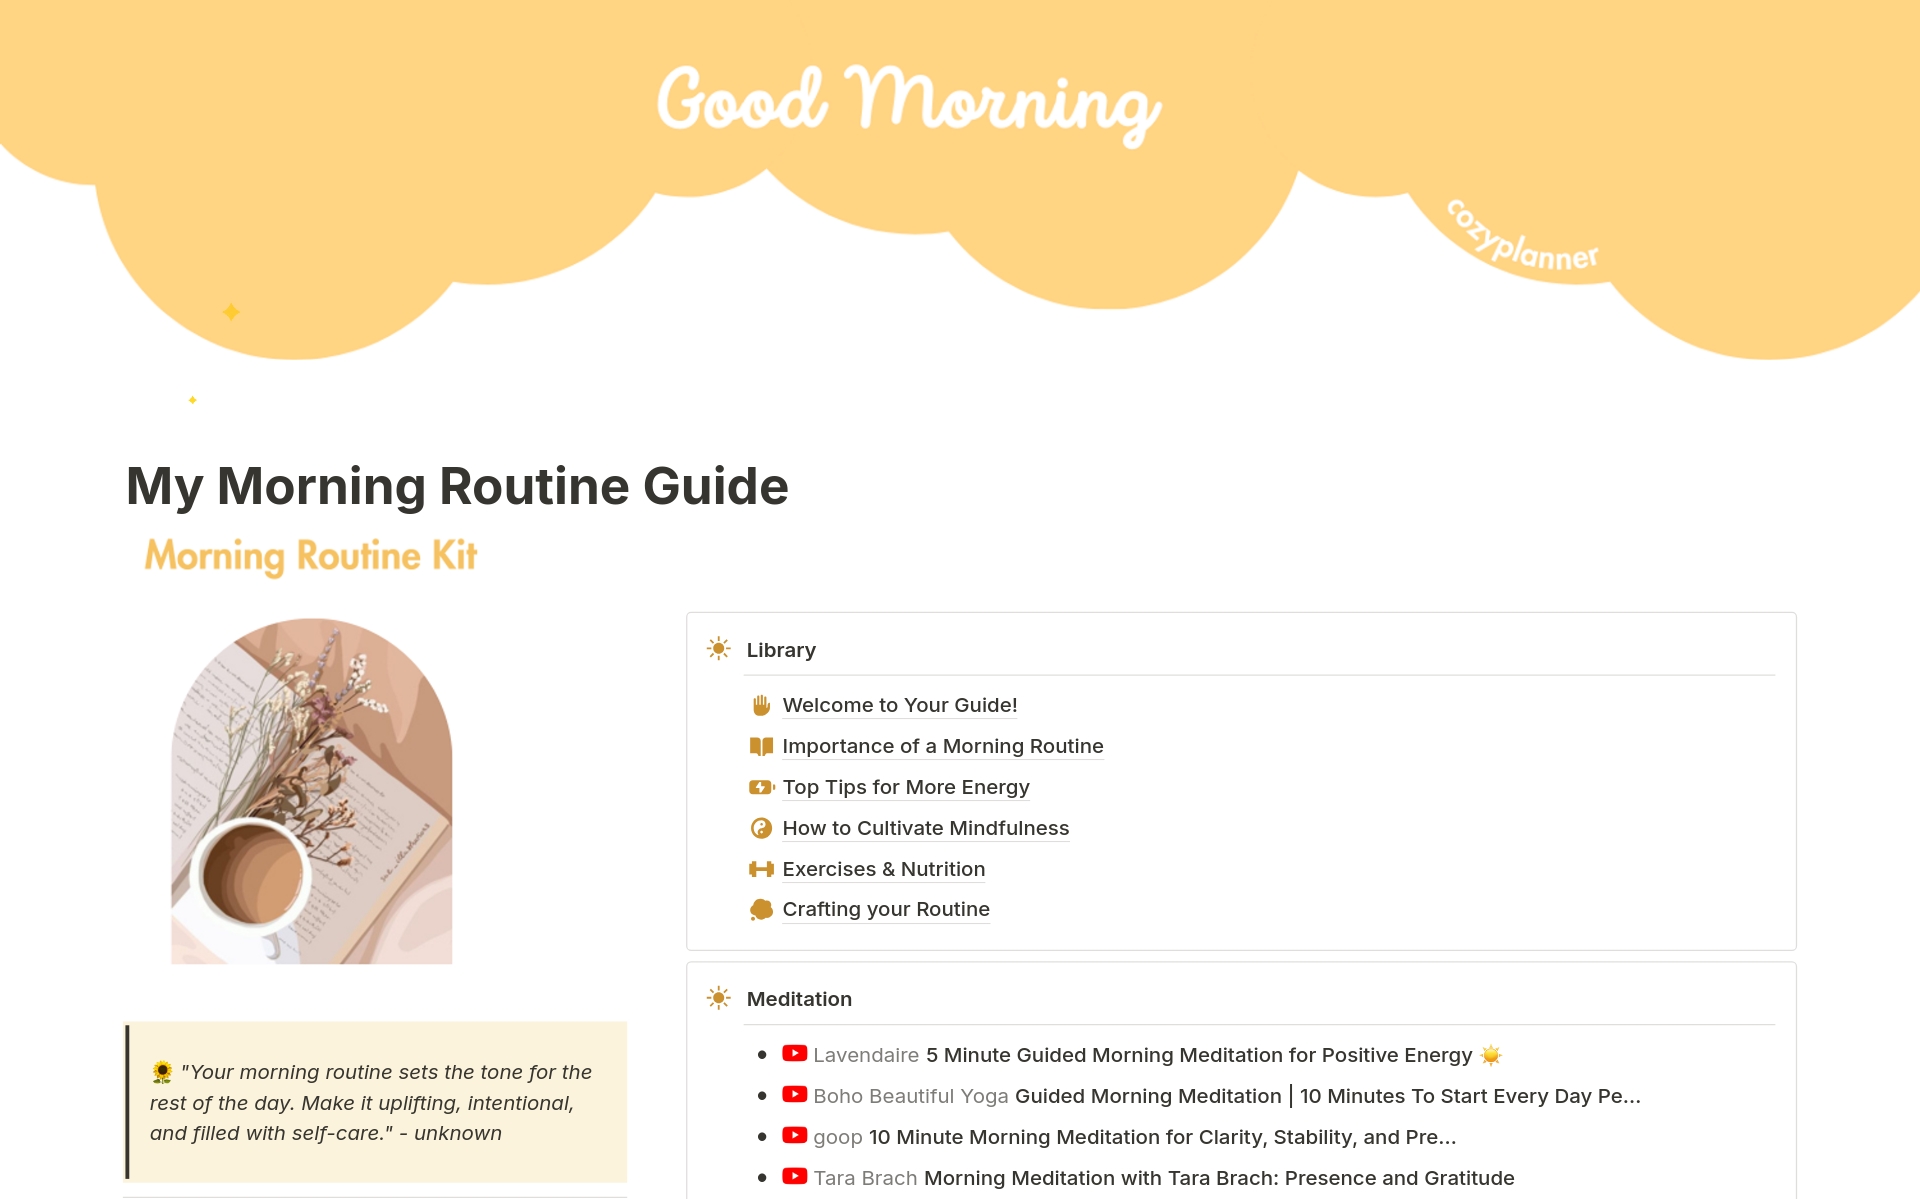 Aperçu du modèle de Morning Routine Guide